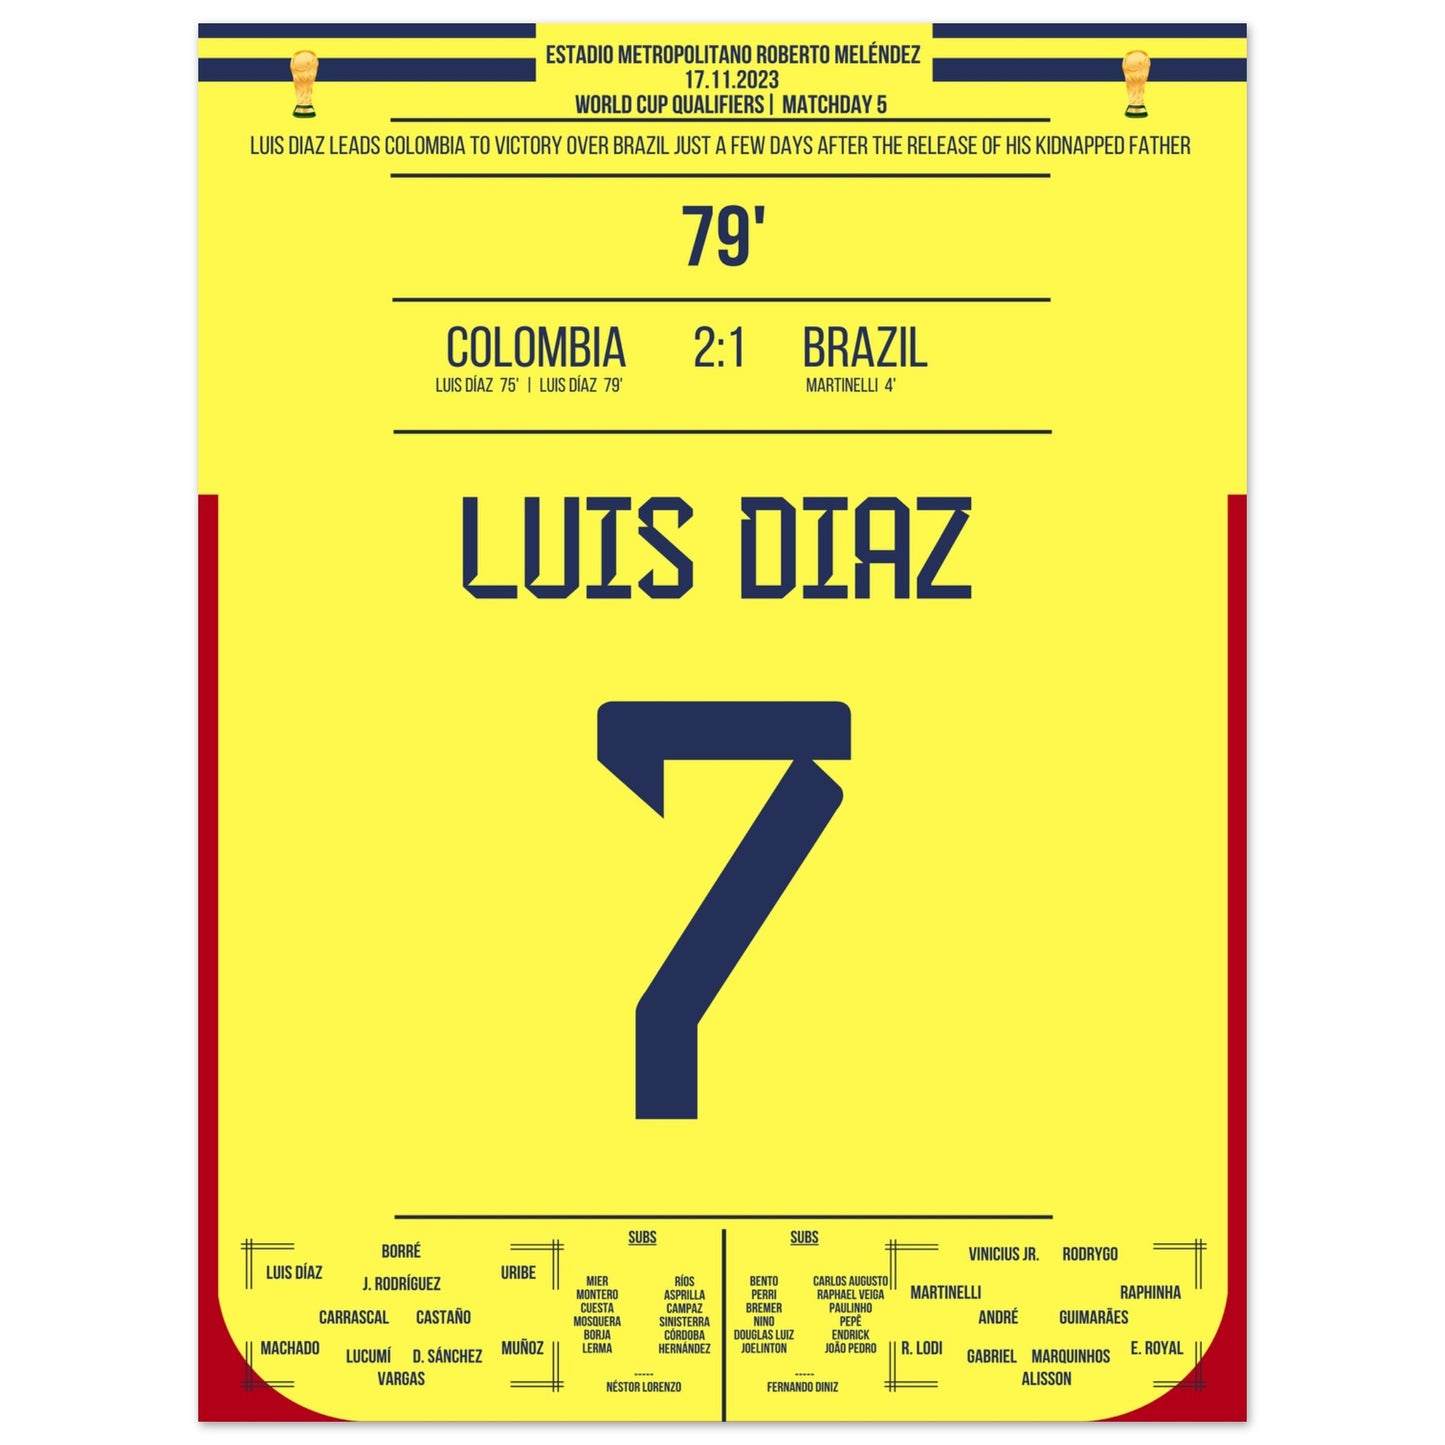 Luis Diaz schießt Kolumbien zum Sieg gegen Brasilien und widmet es seinem Vater